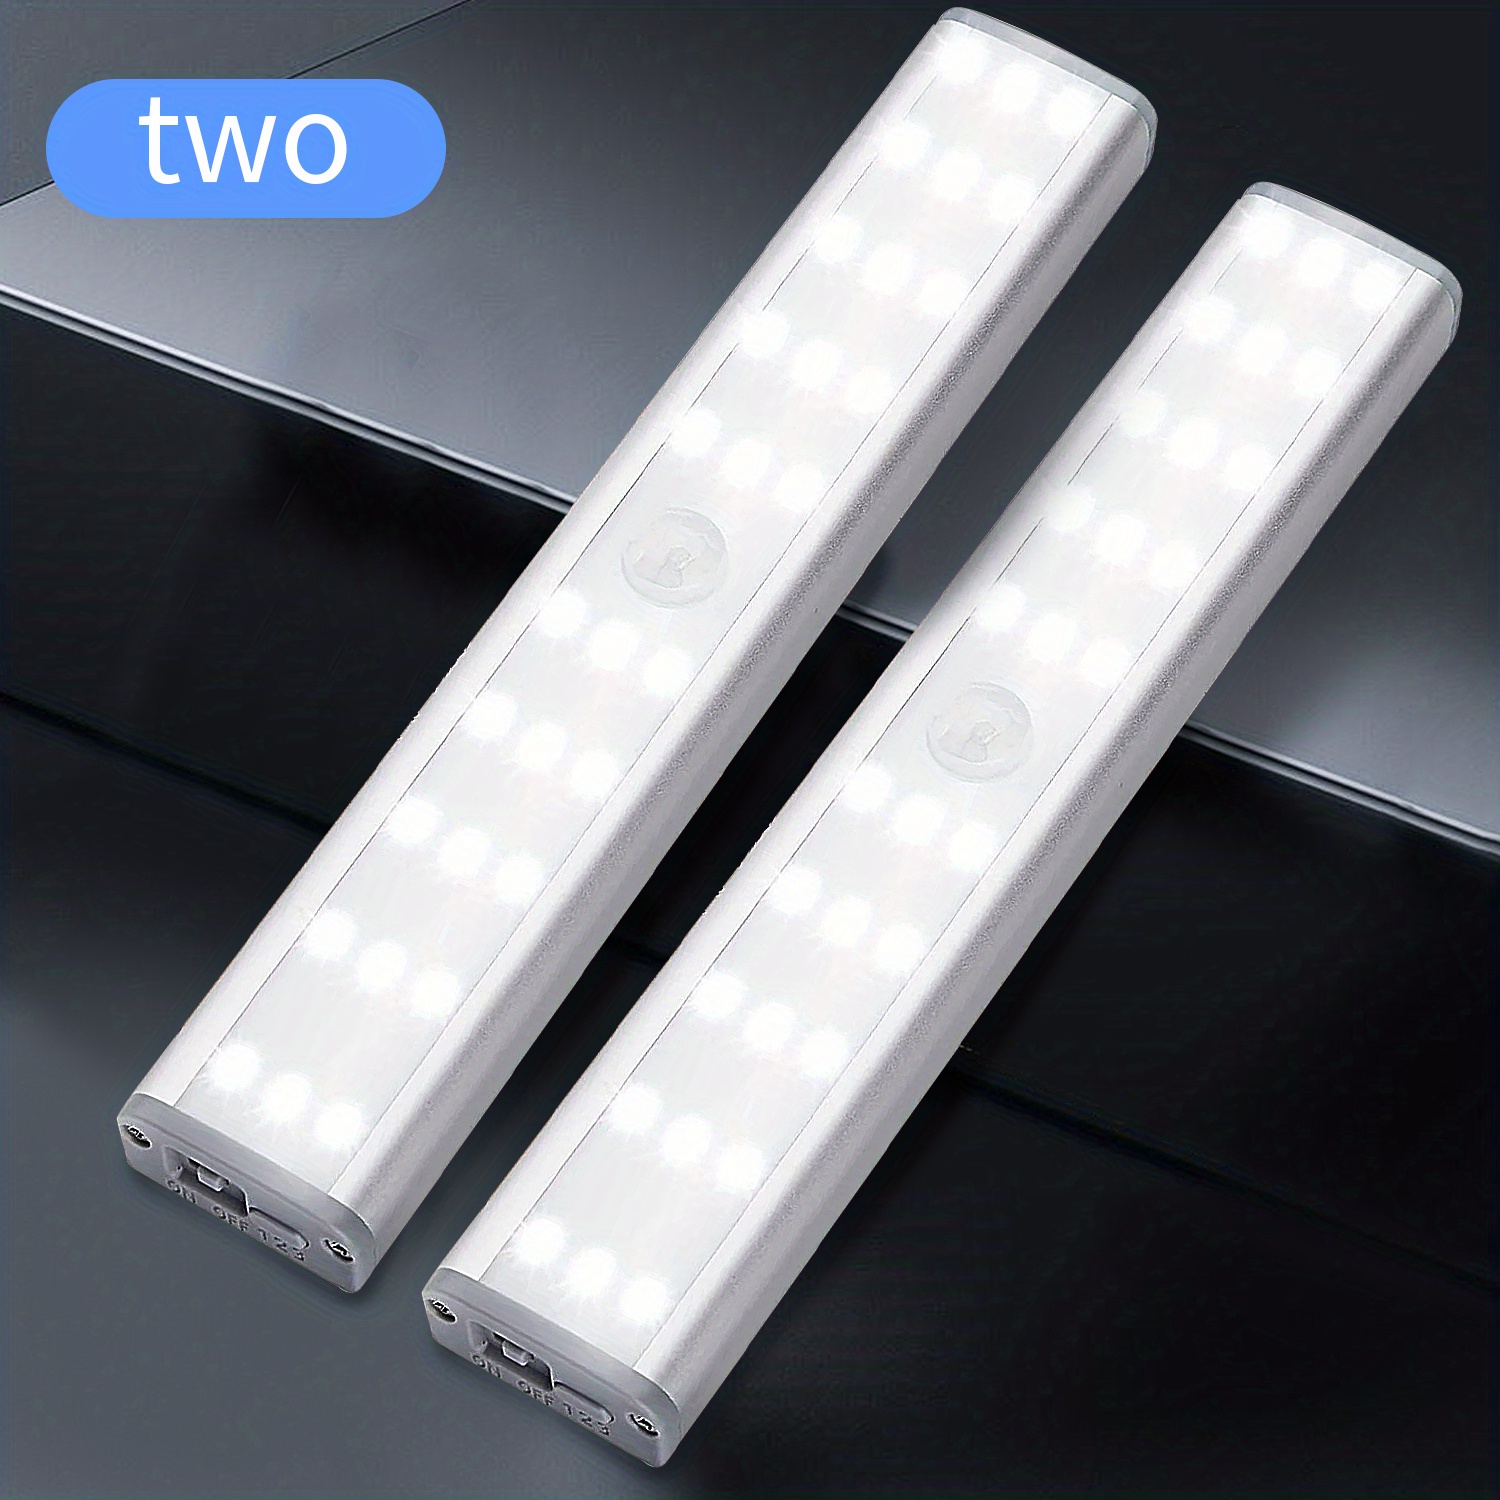 ▷ Chollo Barra de luz LED de 12V para armarios o estanterías desde sólo  9,66€ con envío gratis (-31%)